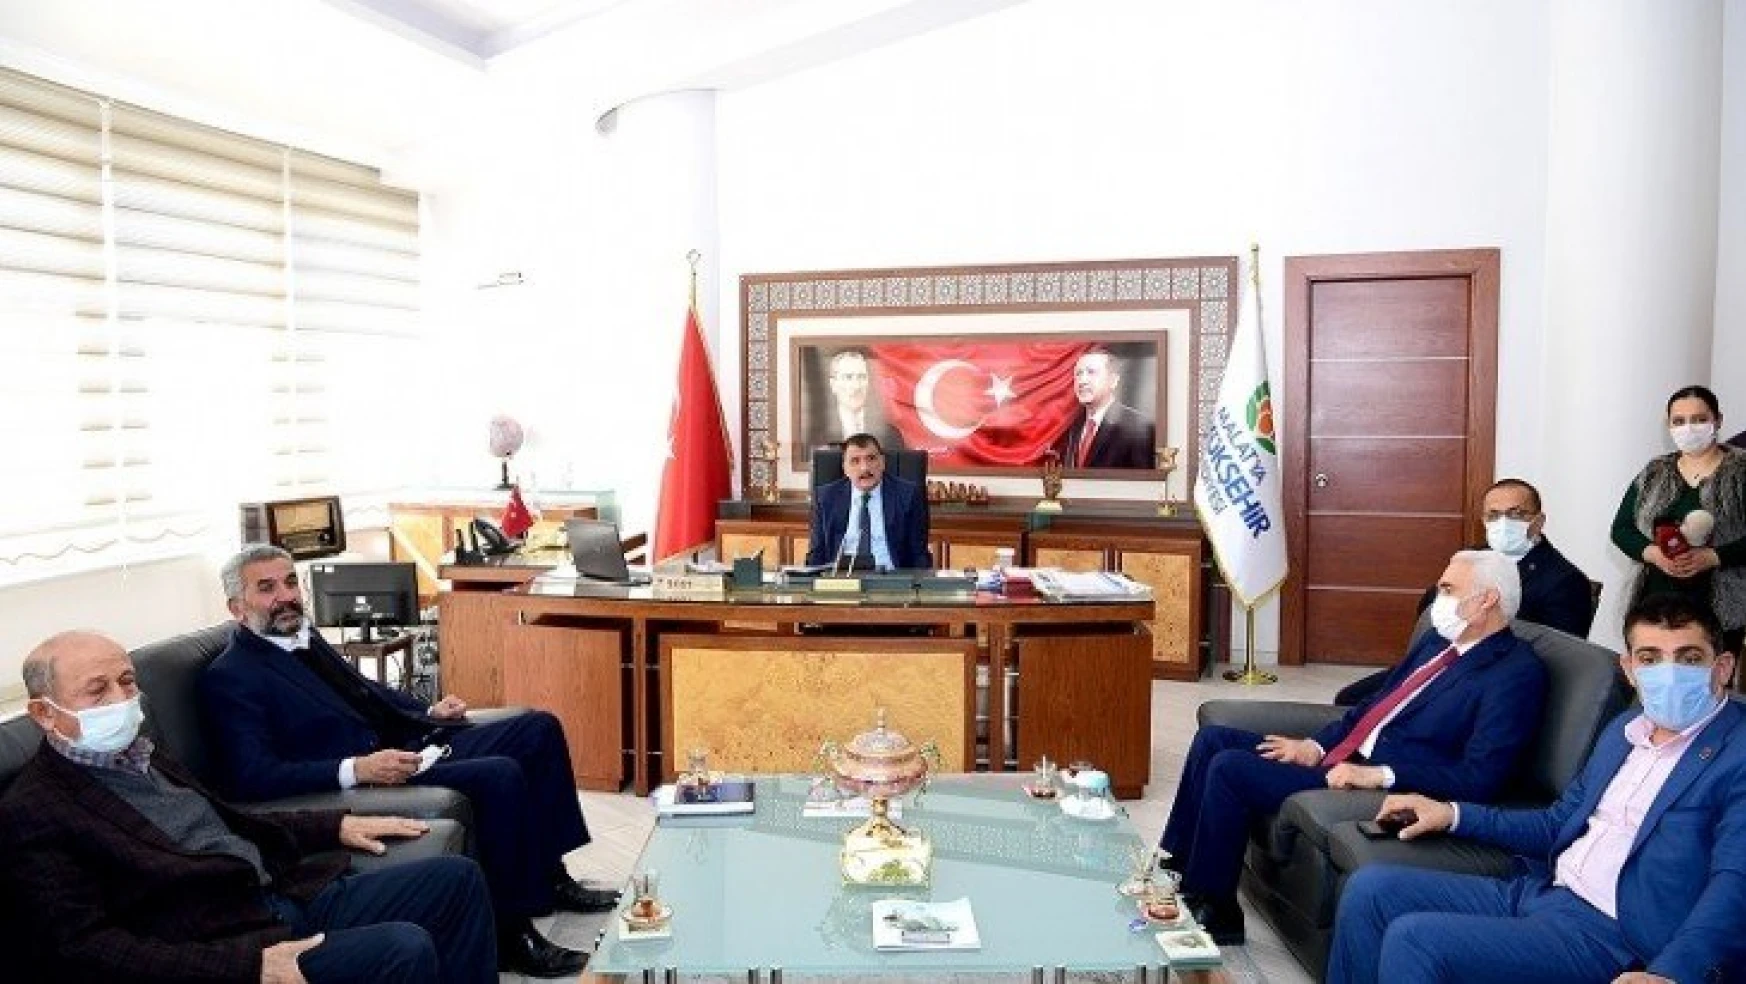 Hekimhan Heyetinden Başkan Gürkan'a Teşekkür Ziyaret